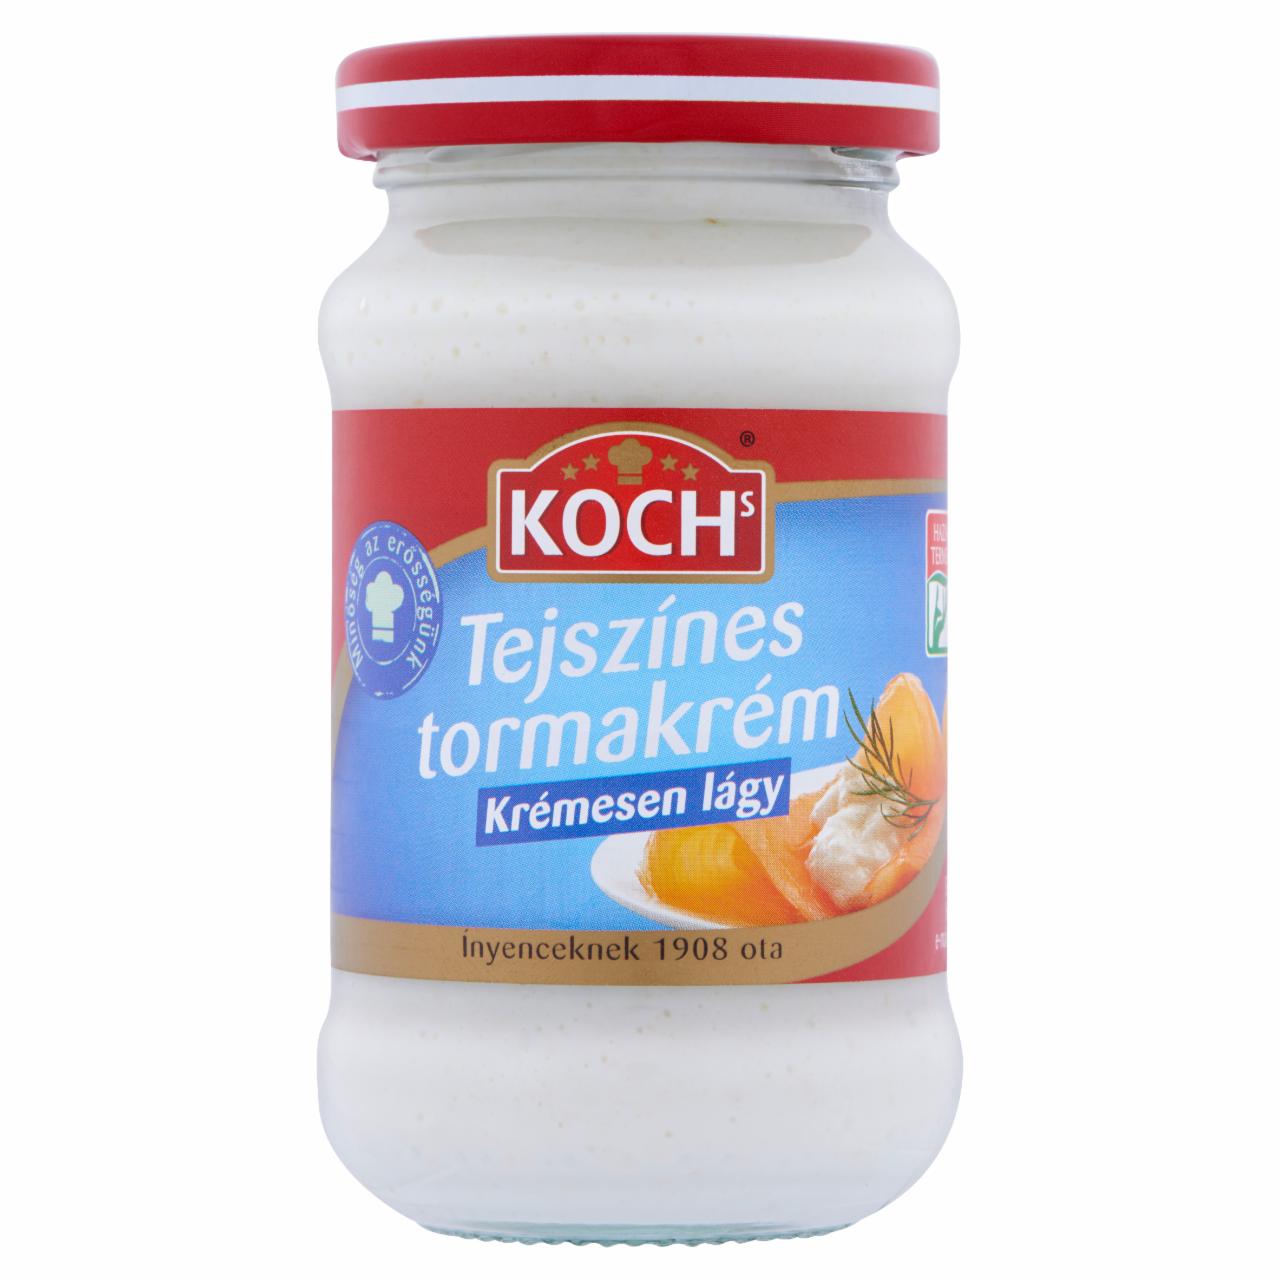 Képek - Koch's tejszínes tormakrém 190 g